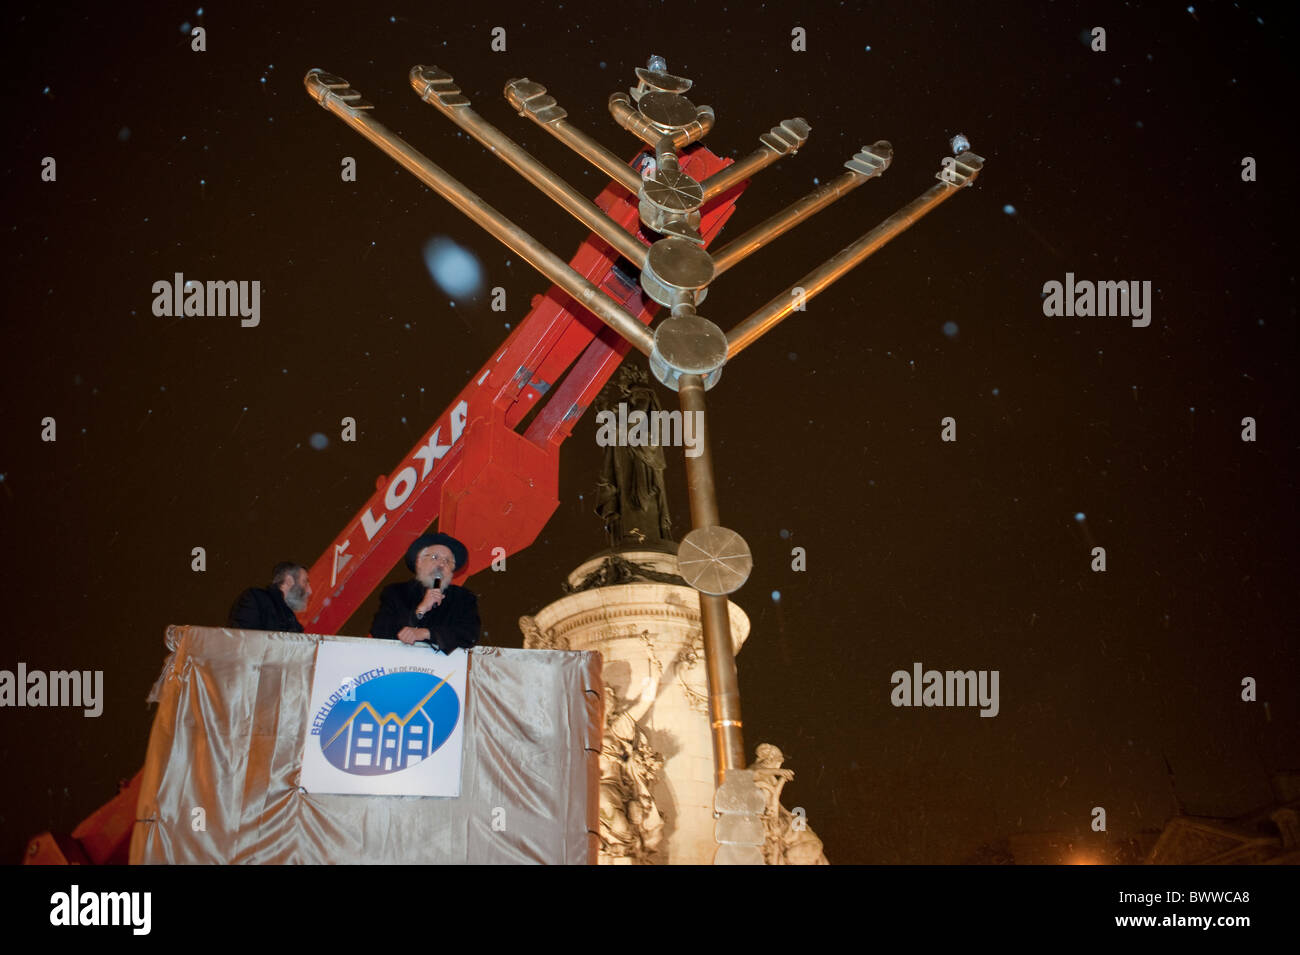 Paris, France, rabbins juifs célébrant les fêtes religieuses annuelles, Hanoukkah, cérémonie d'éclairage des bougies, nuit; traditions juives anciennes Banque D'Images